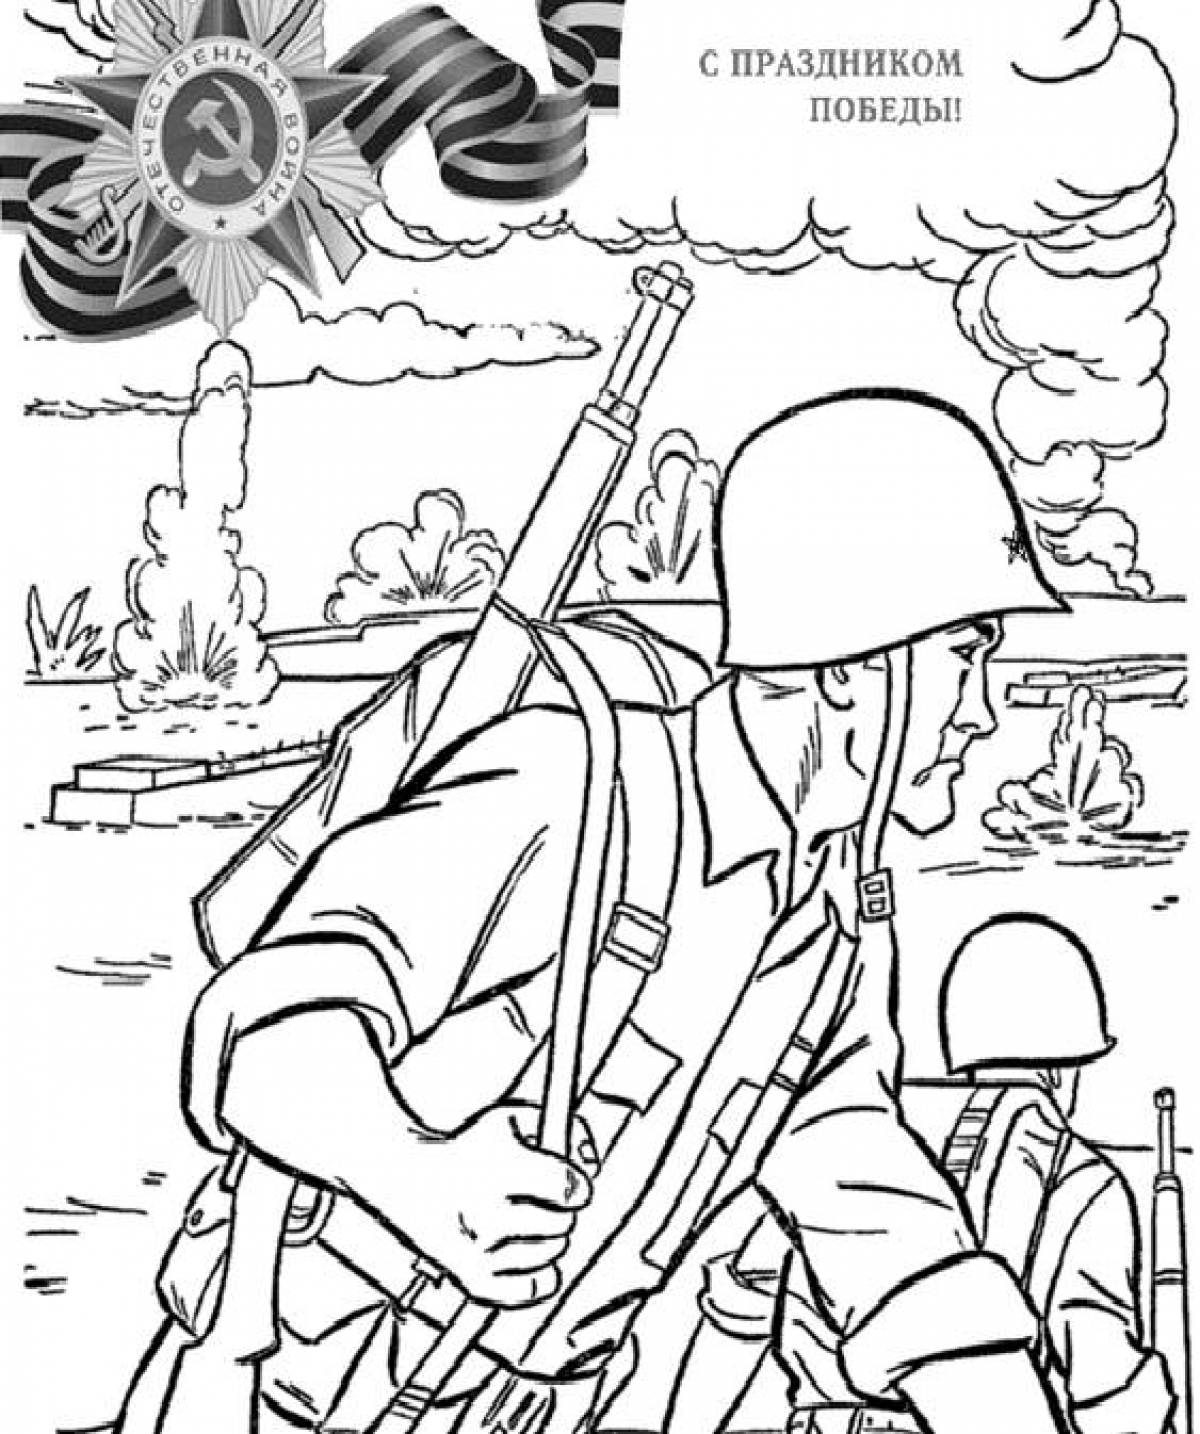 Эскиз рисунка на военную тему